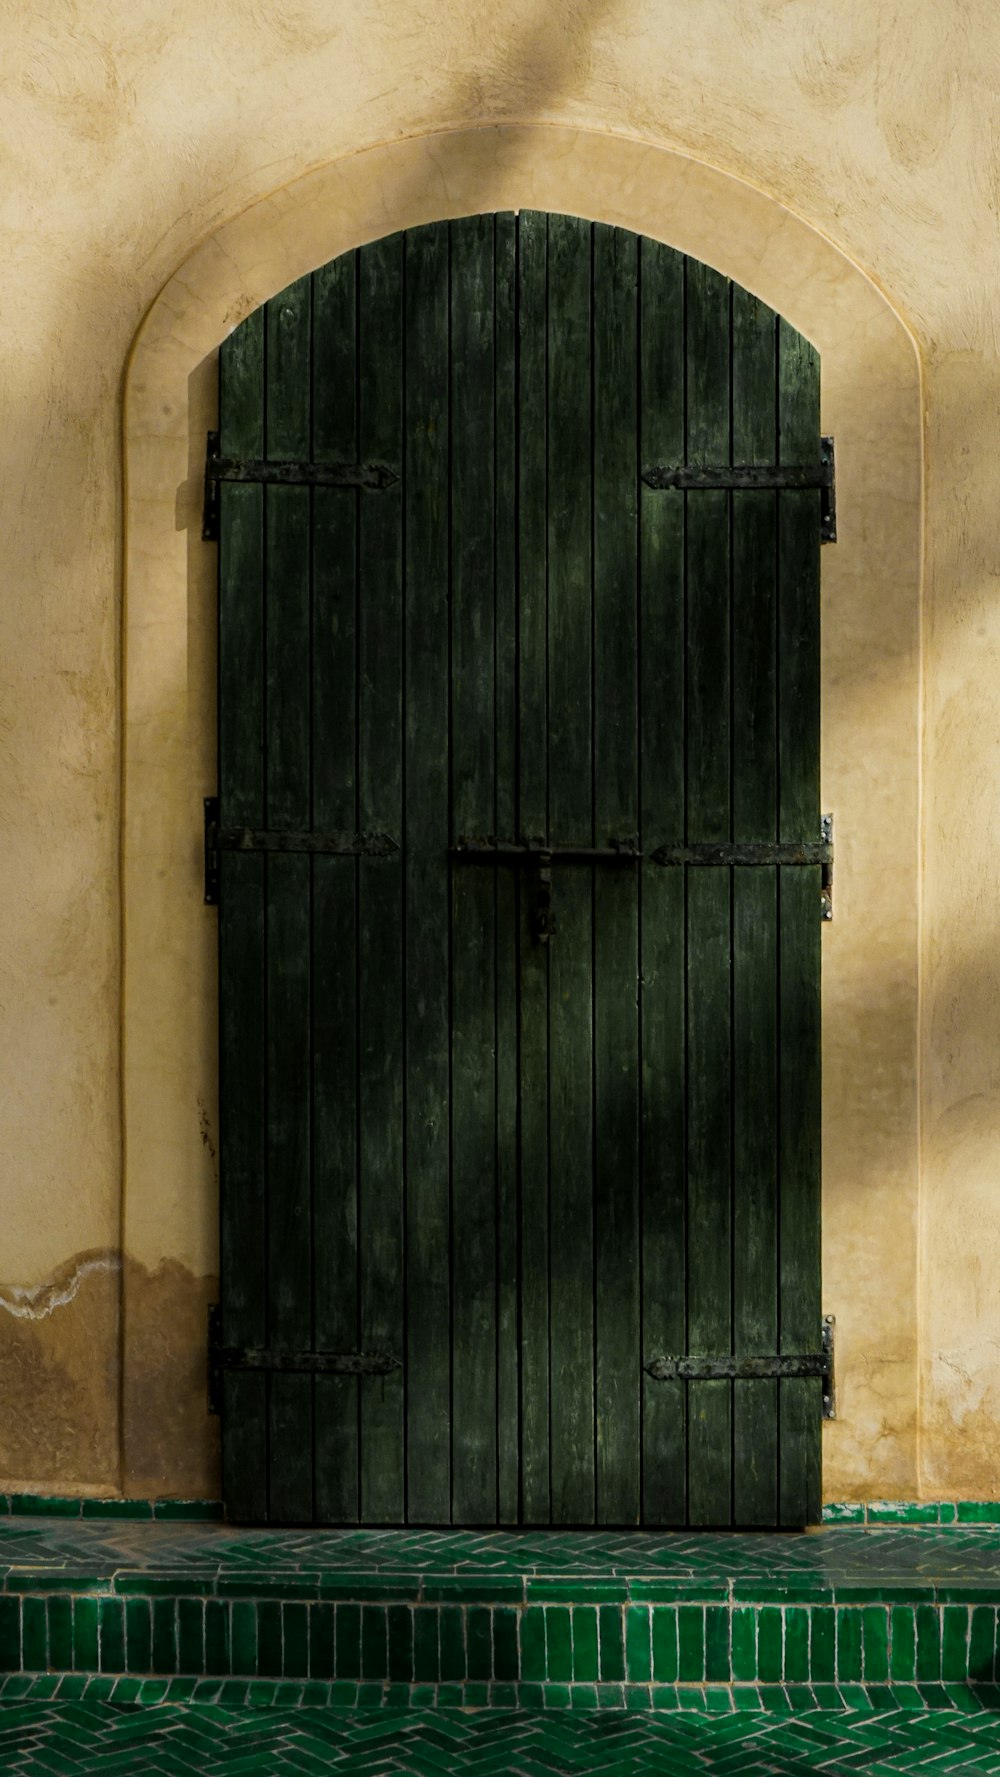 녹색 타일 바닥이 있는 열린 녹색 문